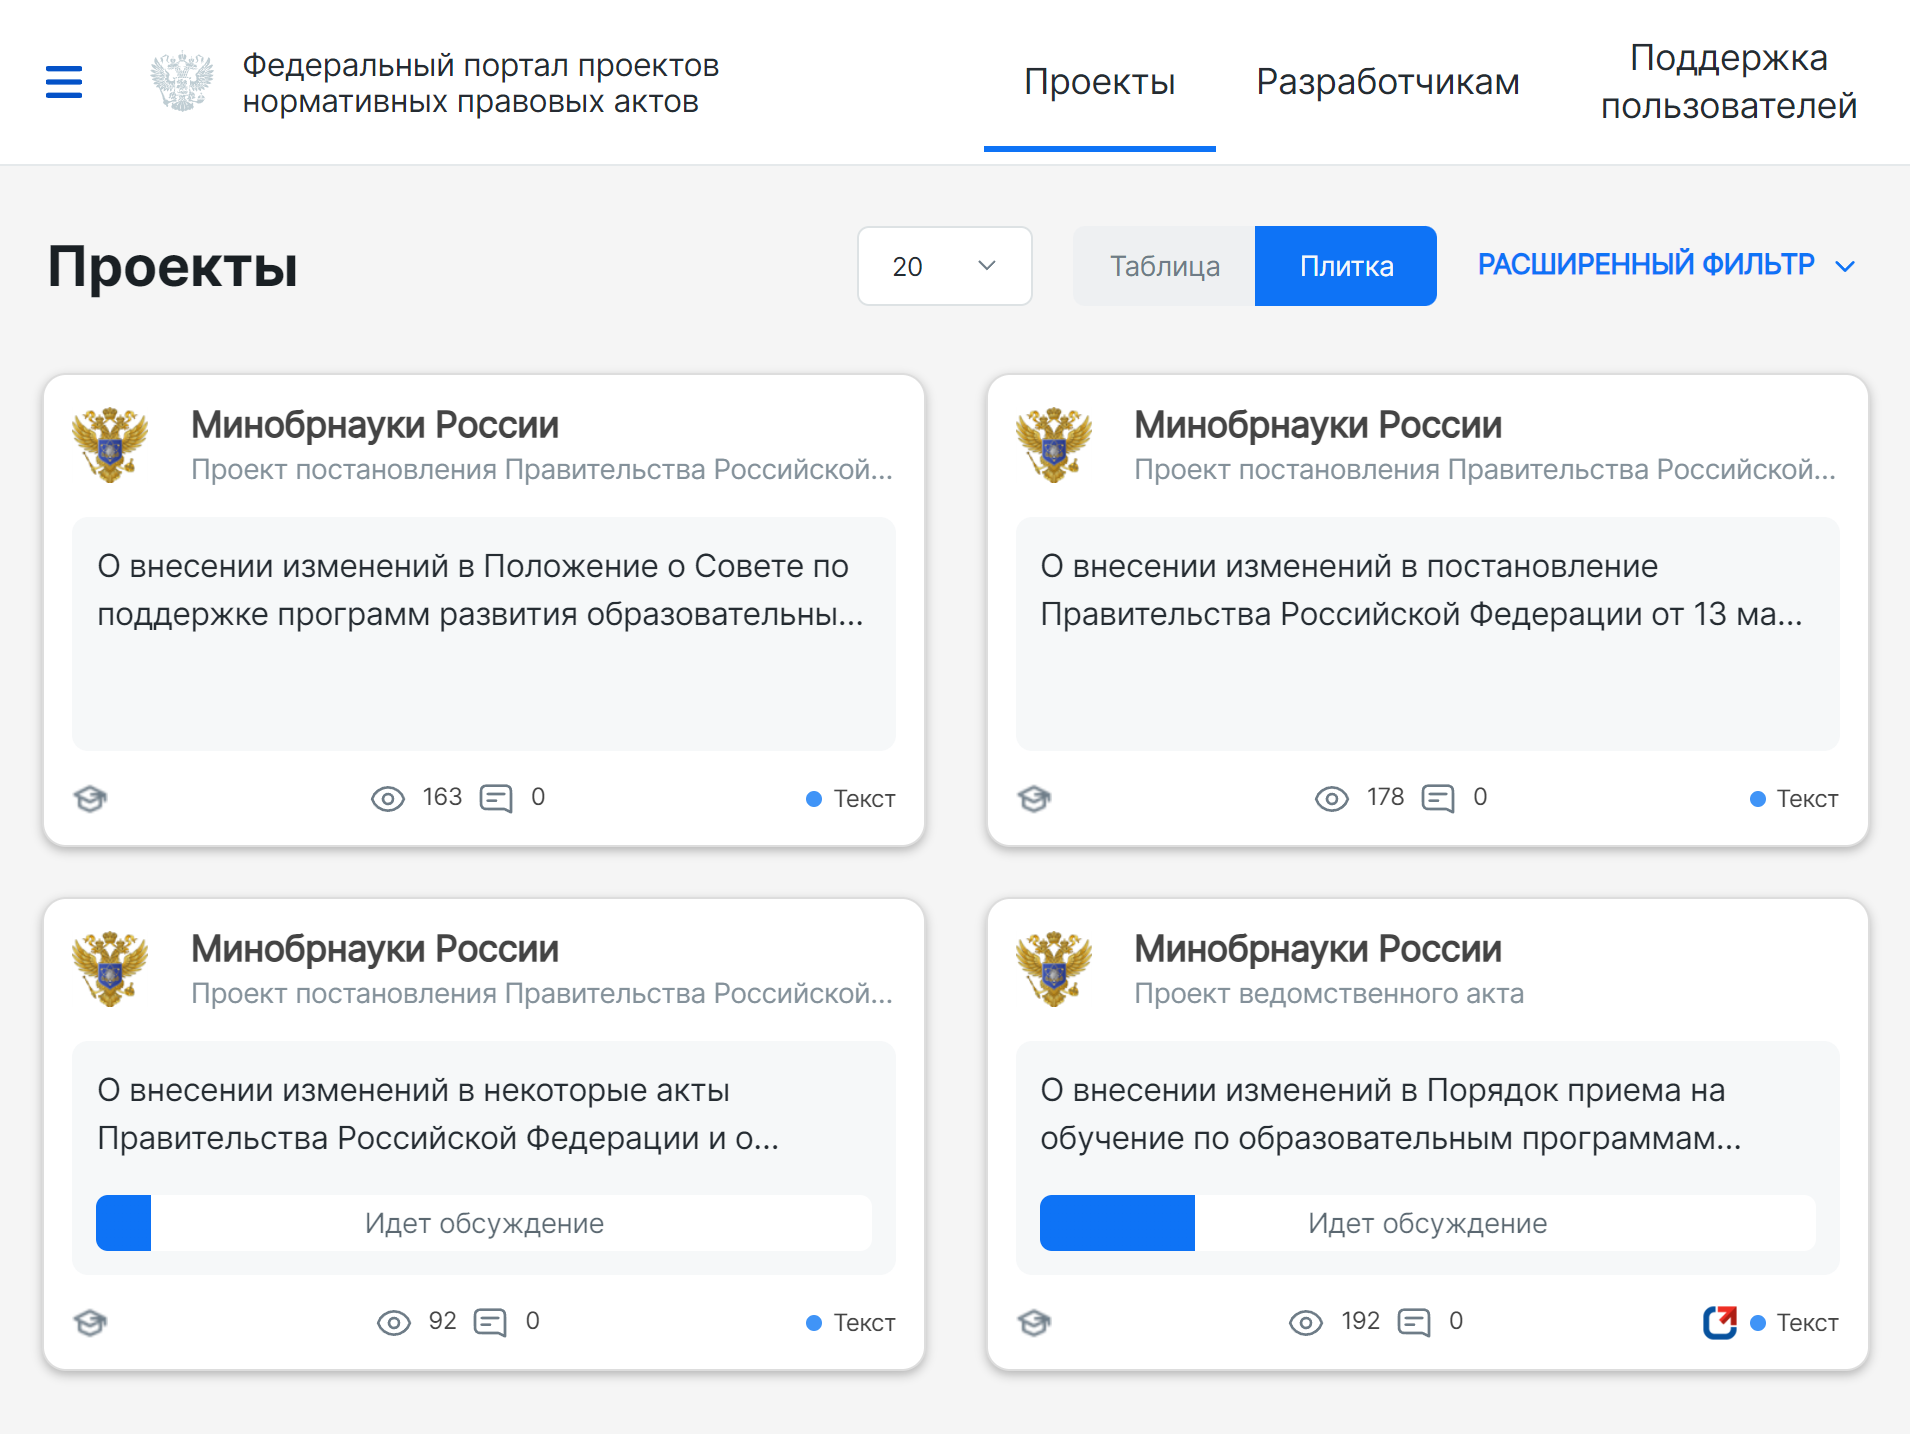 Если хотите следить за новыми проектами нормативных актов Минобрнауки, укажите его в фильтре. Источник: regulation.gov.ru